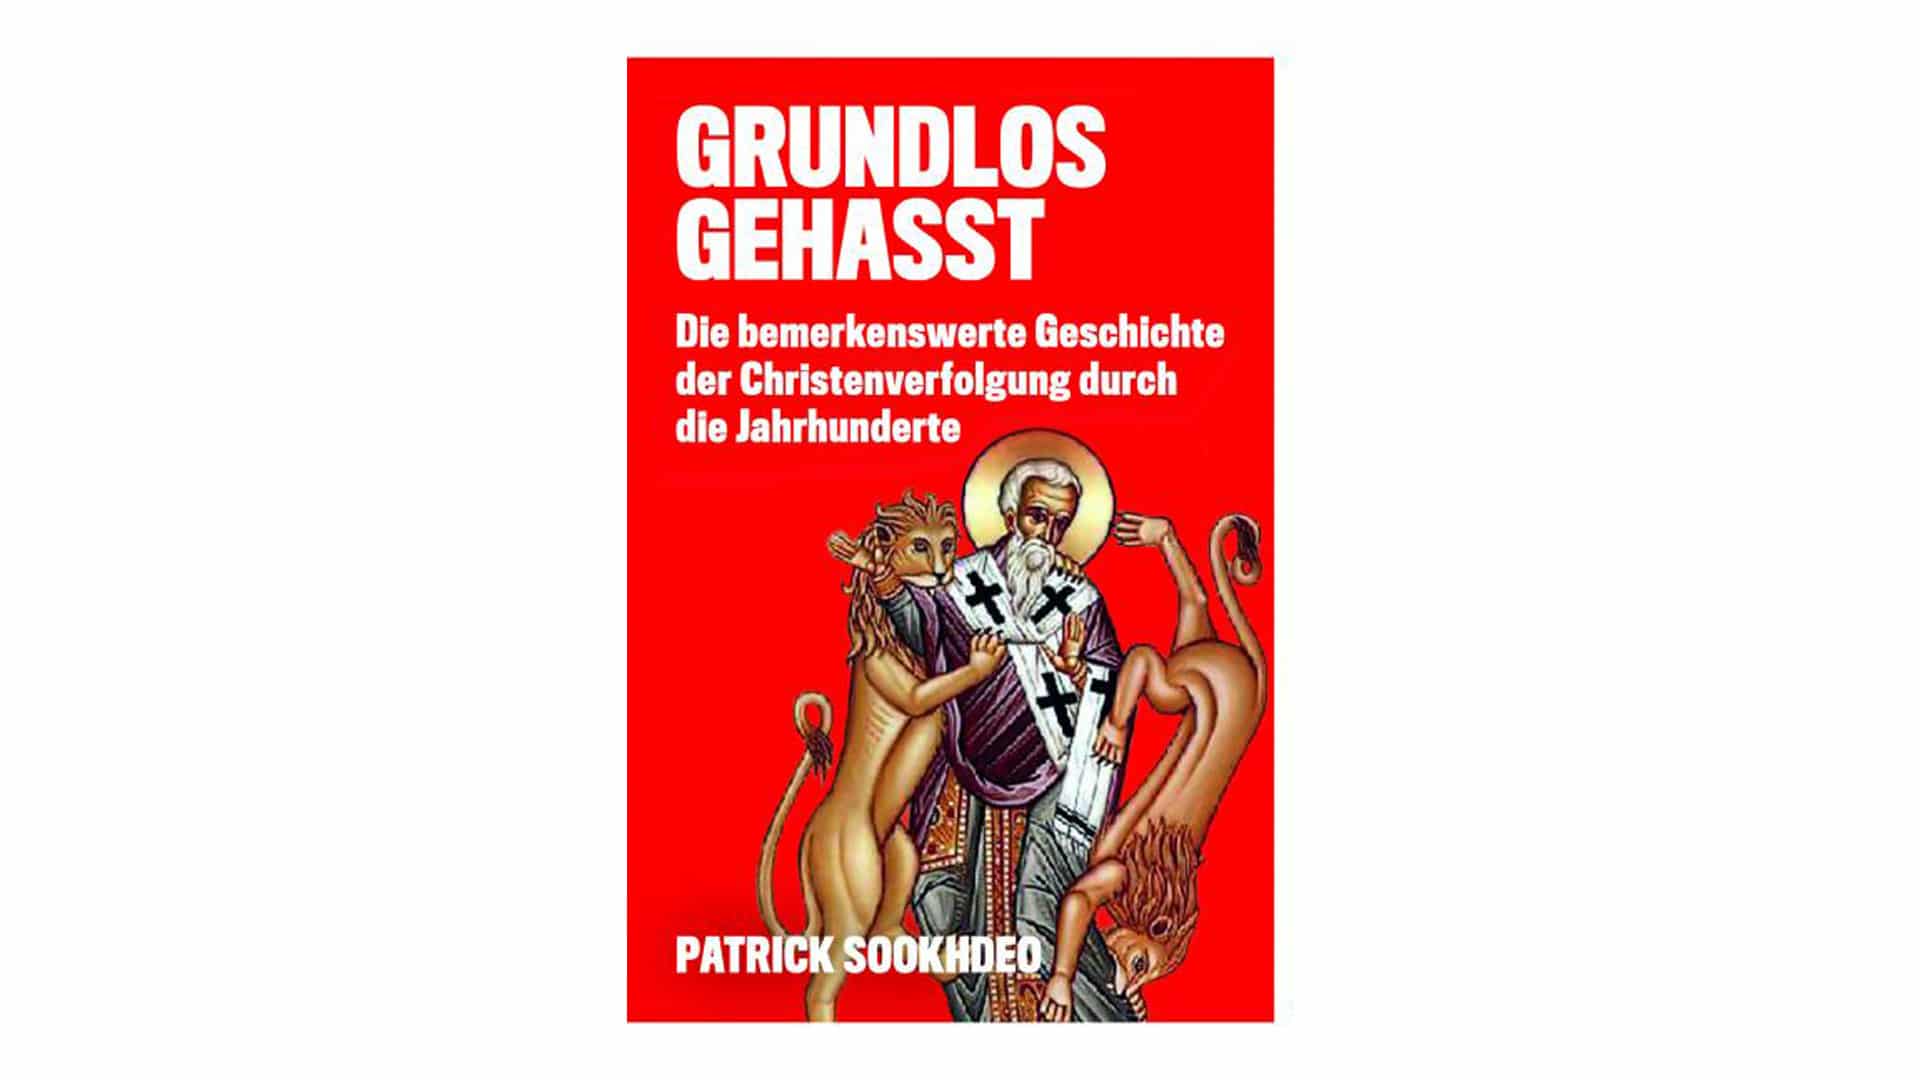 Patrick Sookhdeo: „Grundlos gehasst. Die bemerkenswerte Geschichte der Christenverfolgung durch die Jahrhunderte“, Isaac Publishing, 278 Seiten, 15,90 Euro, EAN 9780997703306